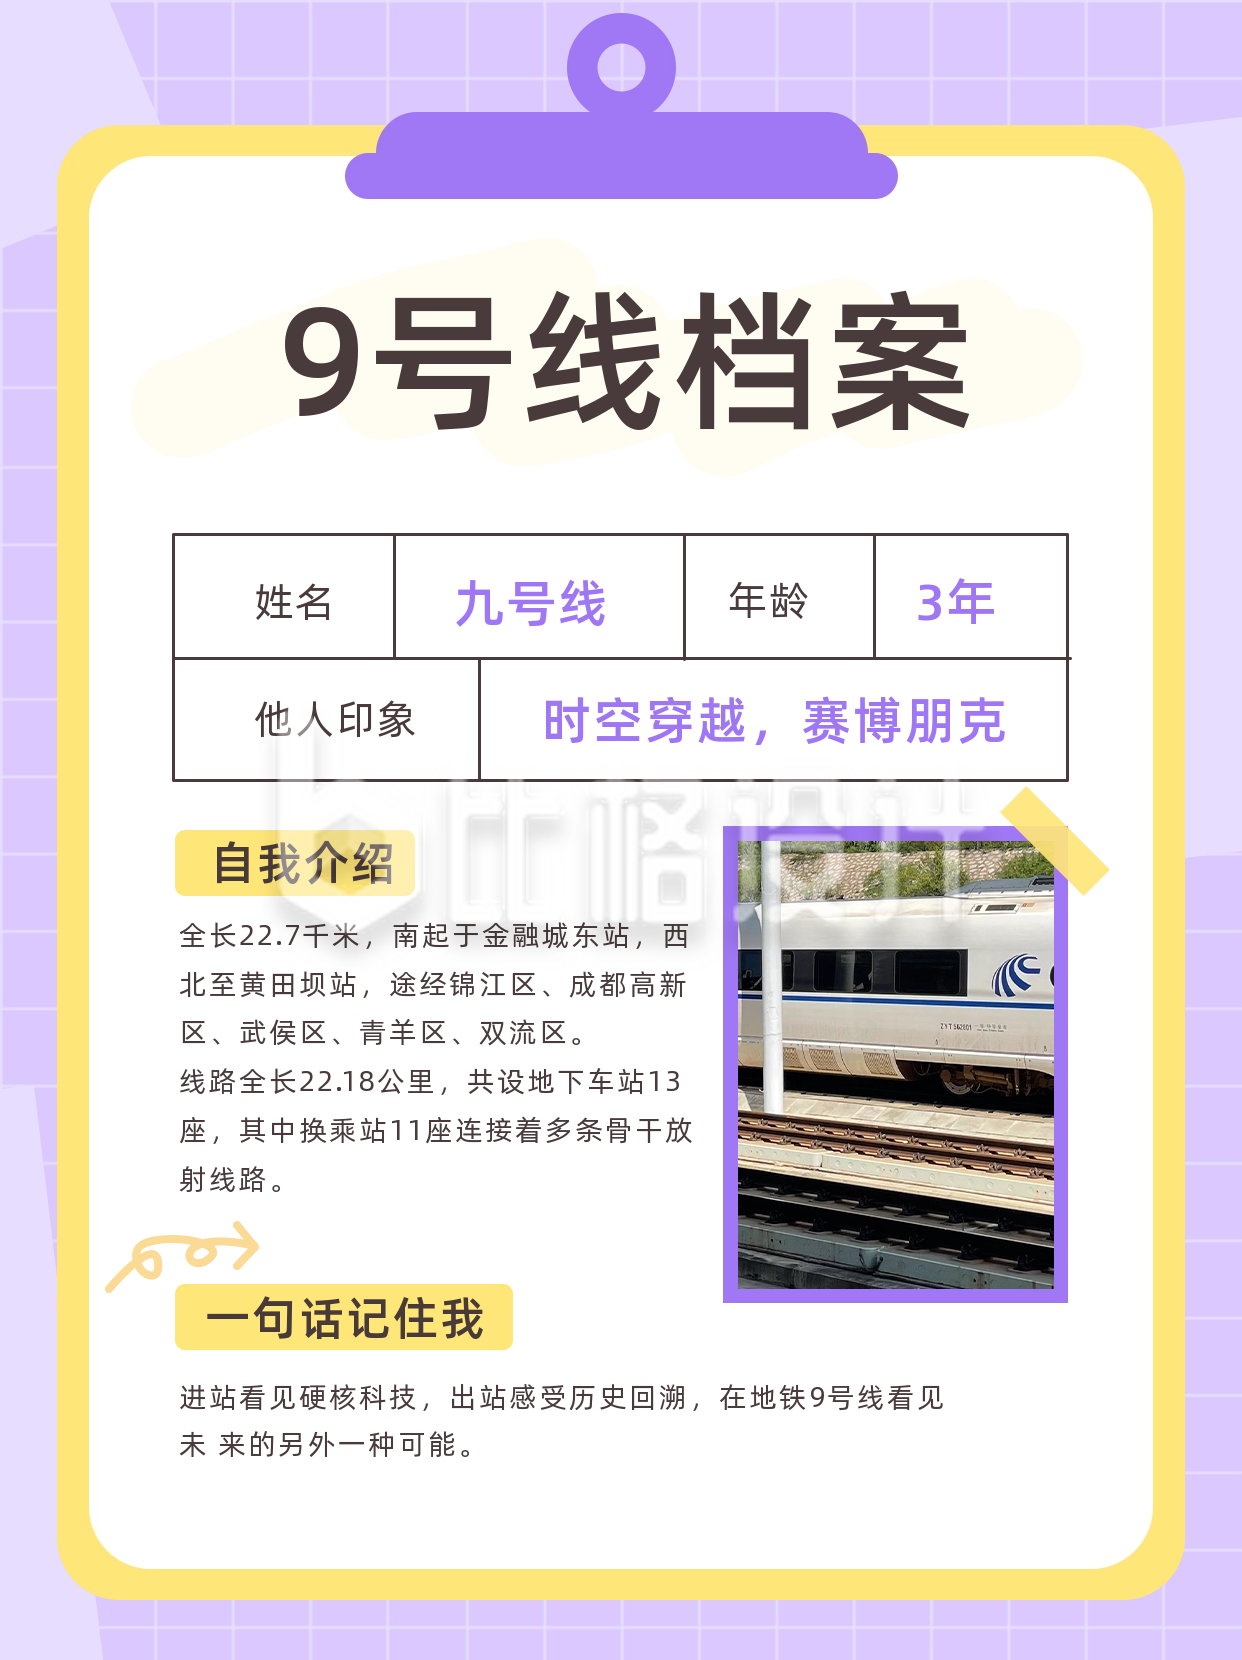 地铁9号线档案介绍宣传小红书封面